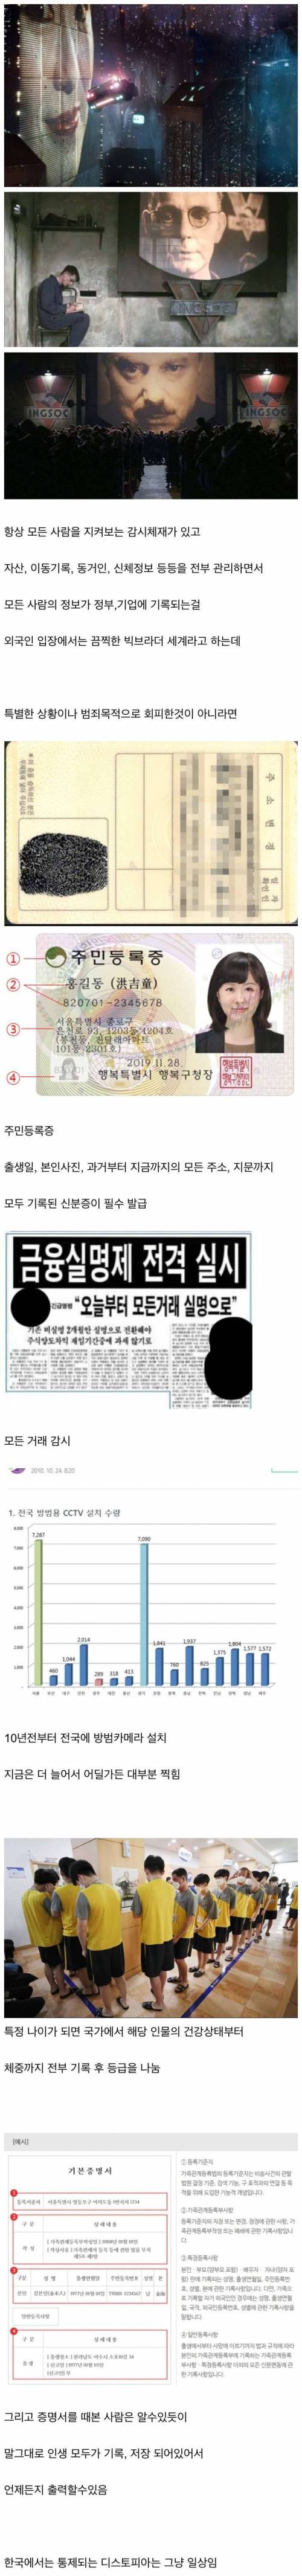 한국인이 통제된 디스토피아에 이입 못하는 이유